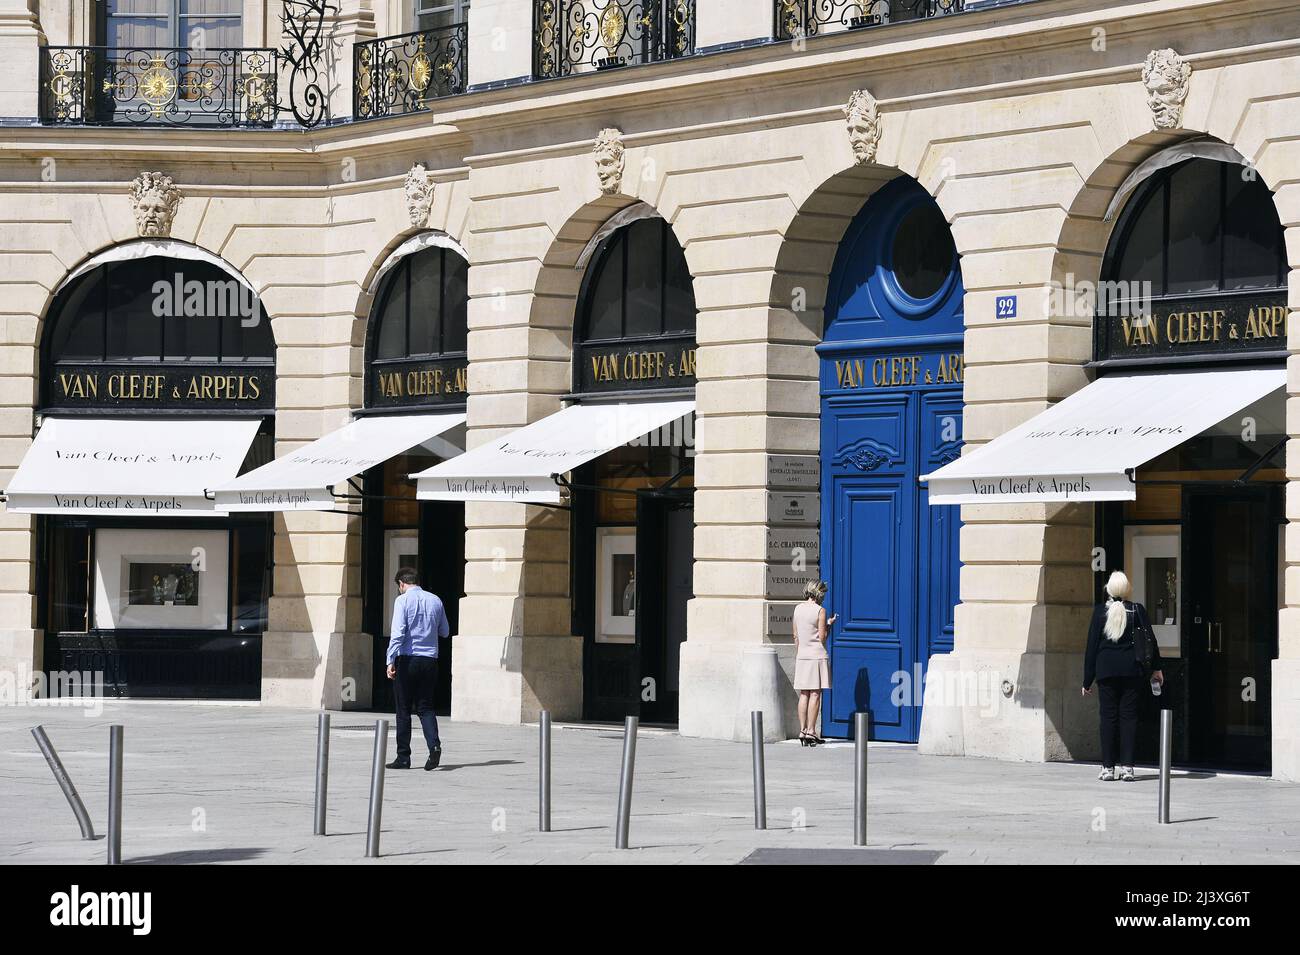 Van Cleef & Arpels - Place Vendôme - Paris - France Stock Photo - Alamy